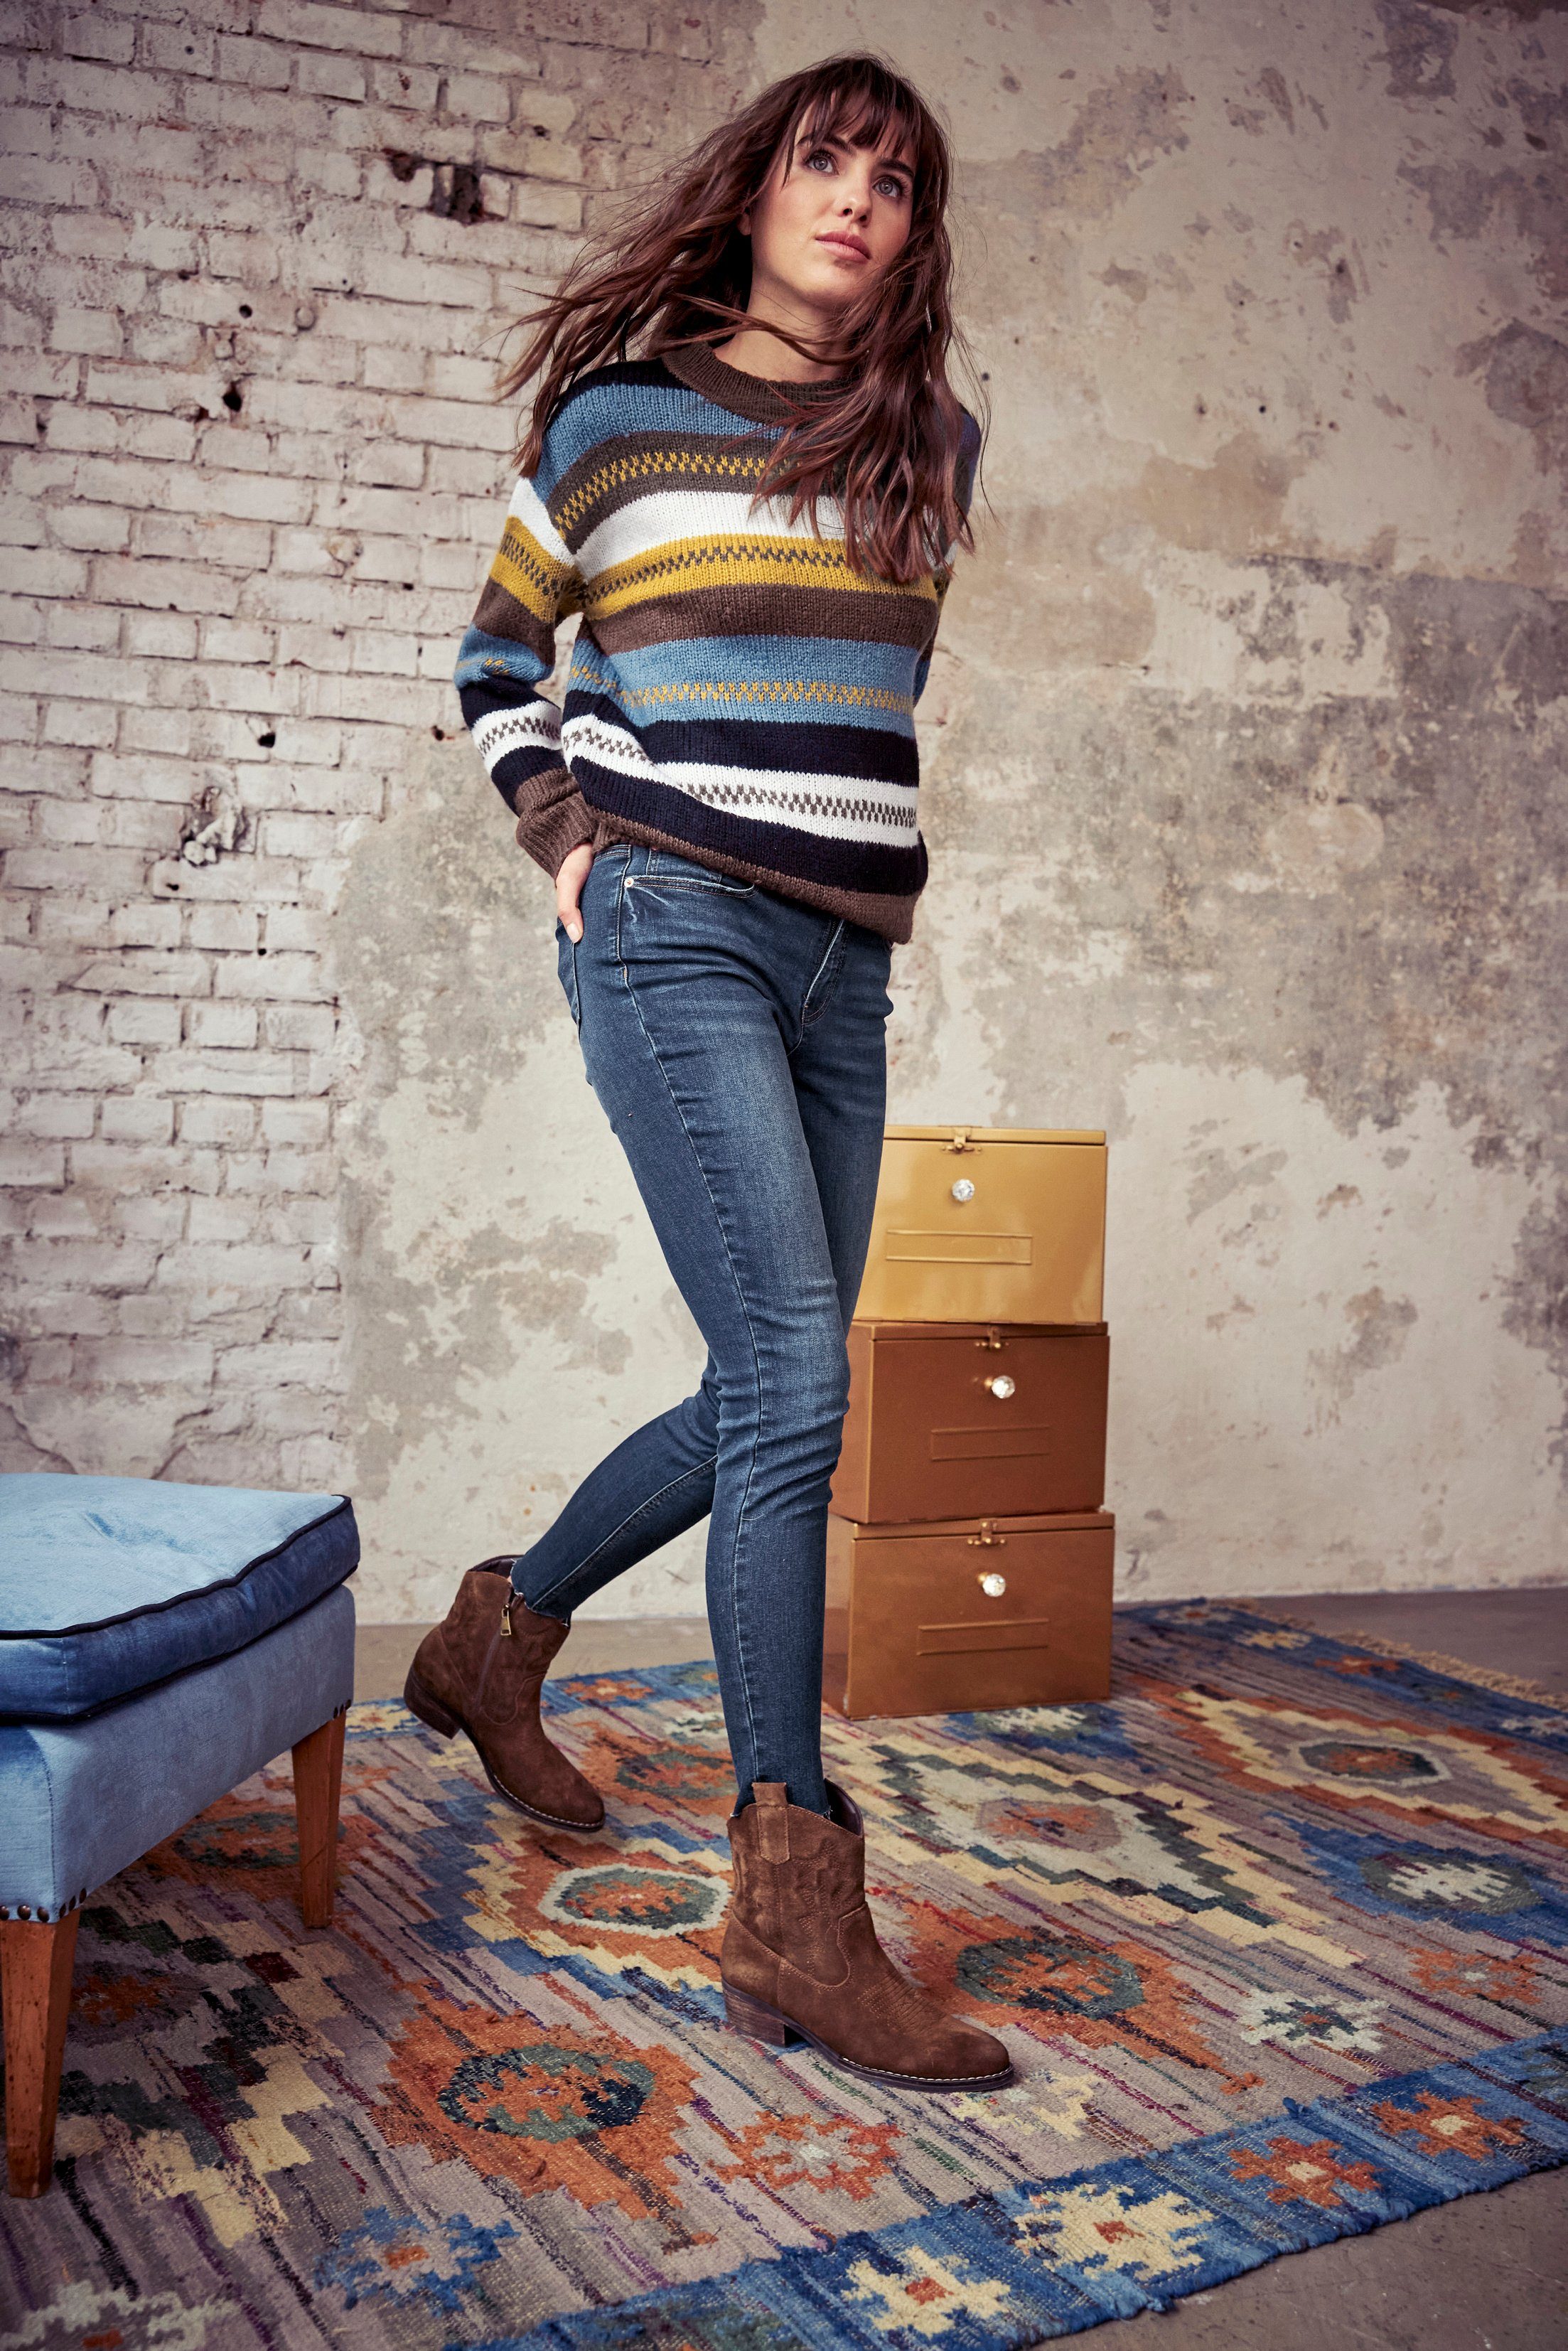 Aniston Skinny-fit-Jeans CASUAL - mit Beinabschluss darkblue ausgefransten regular waist